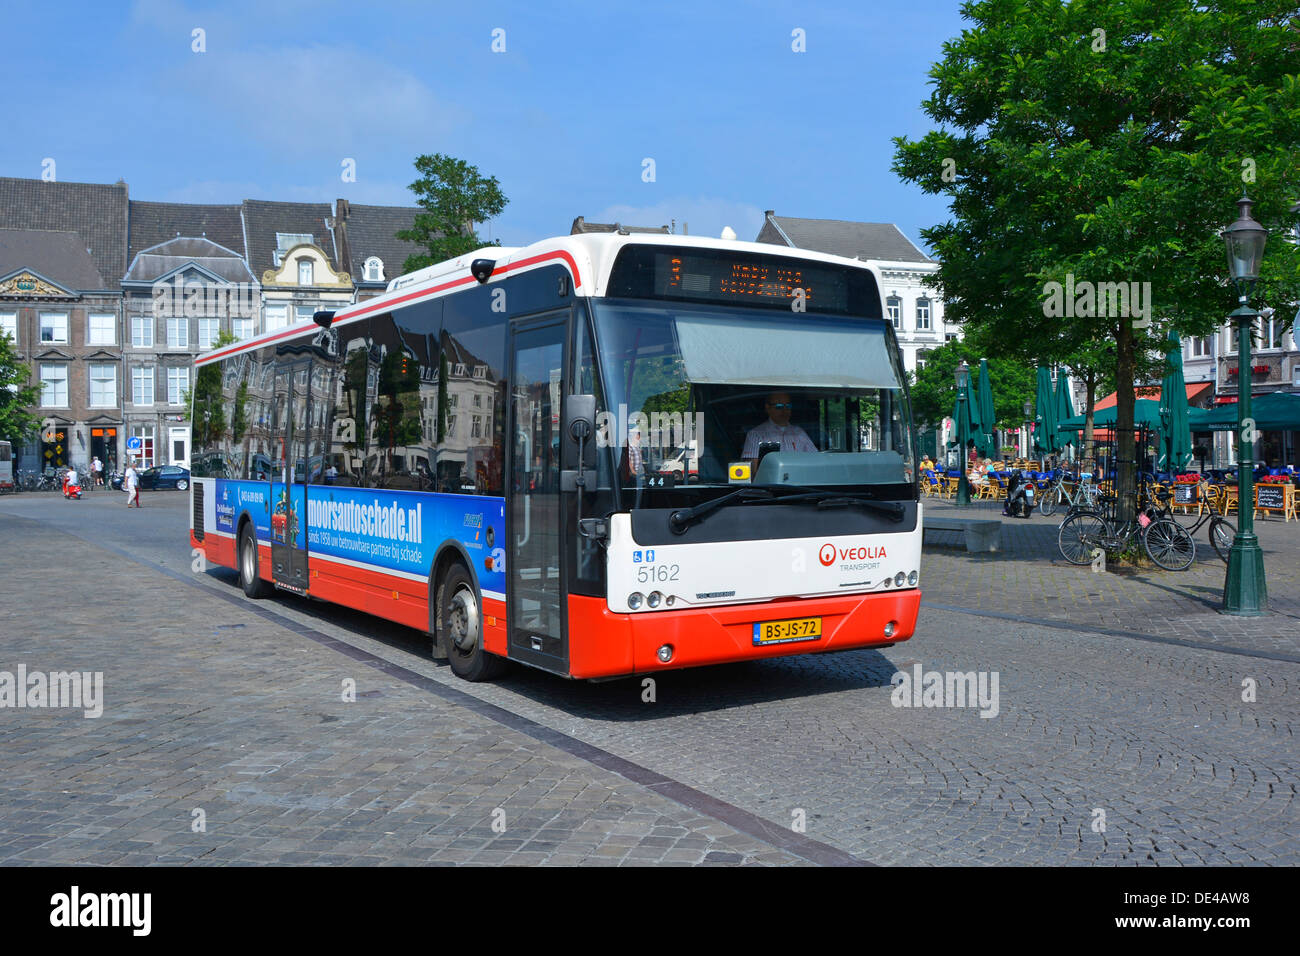 Autobus a un piano della città di Maastricht gestito dall'azienda Veolia Transport, vista ravvicinata che guida lungo la superficie stradale acciottolata Limburgo Paesi Bassi Europa e UE Foto Stock